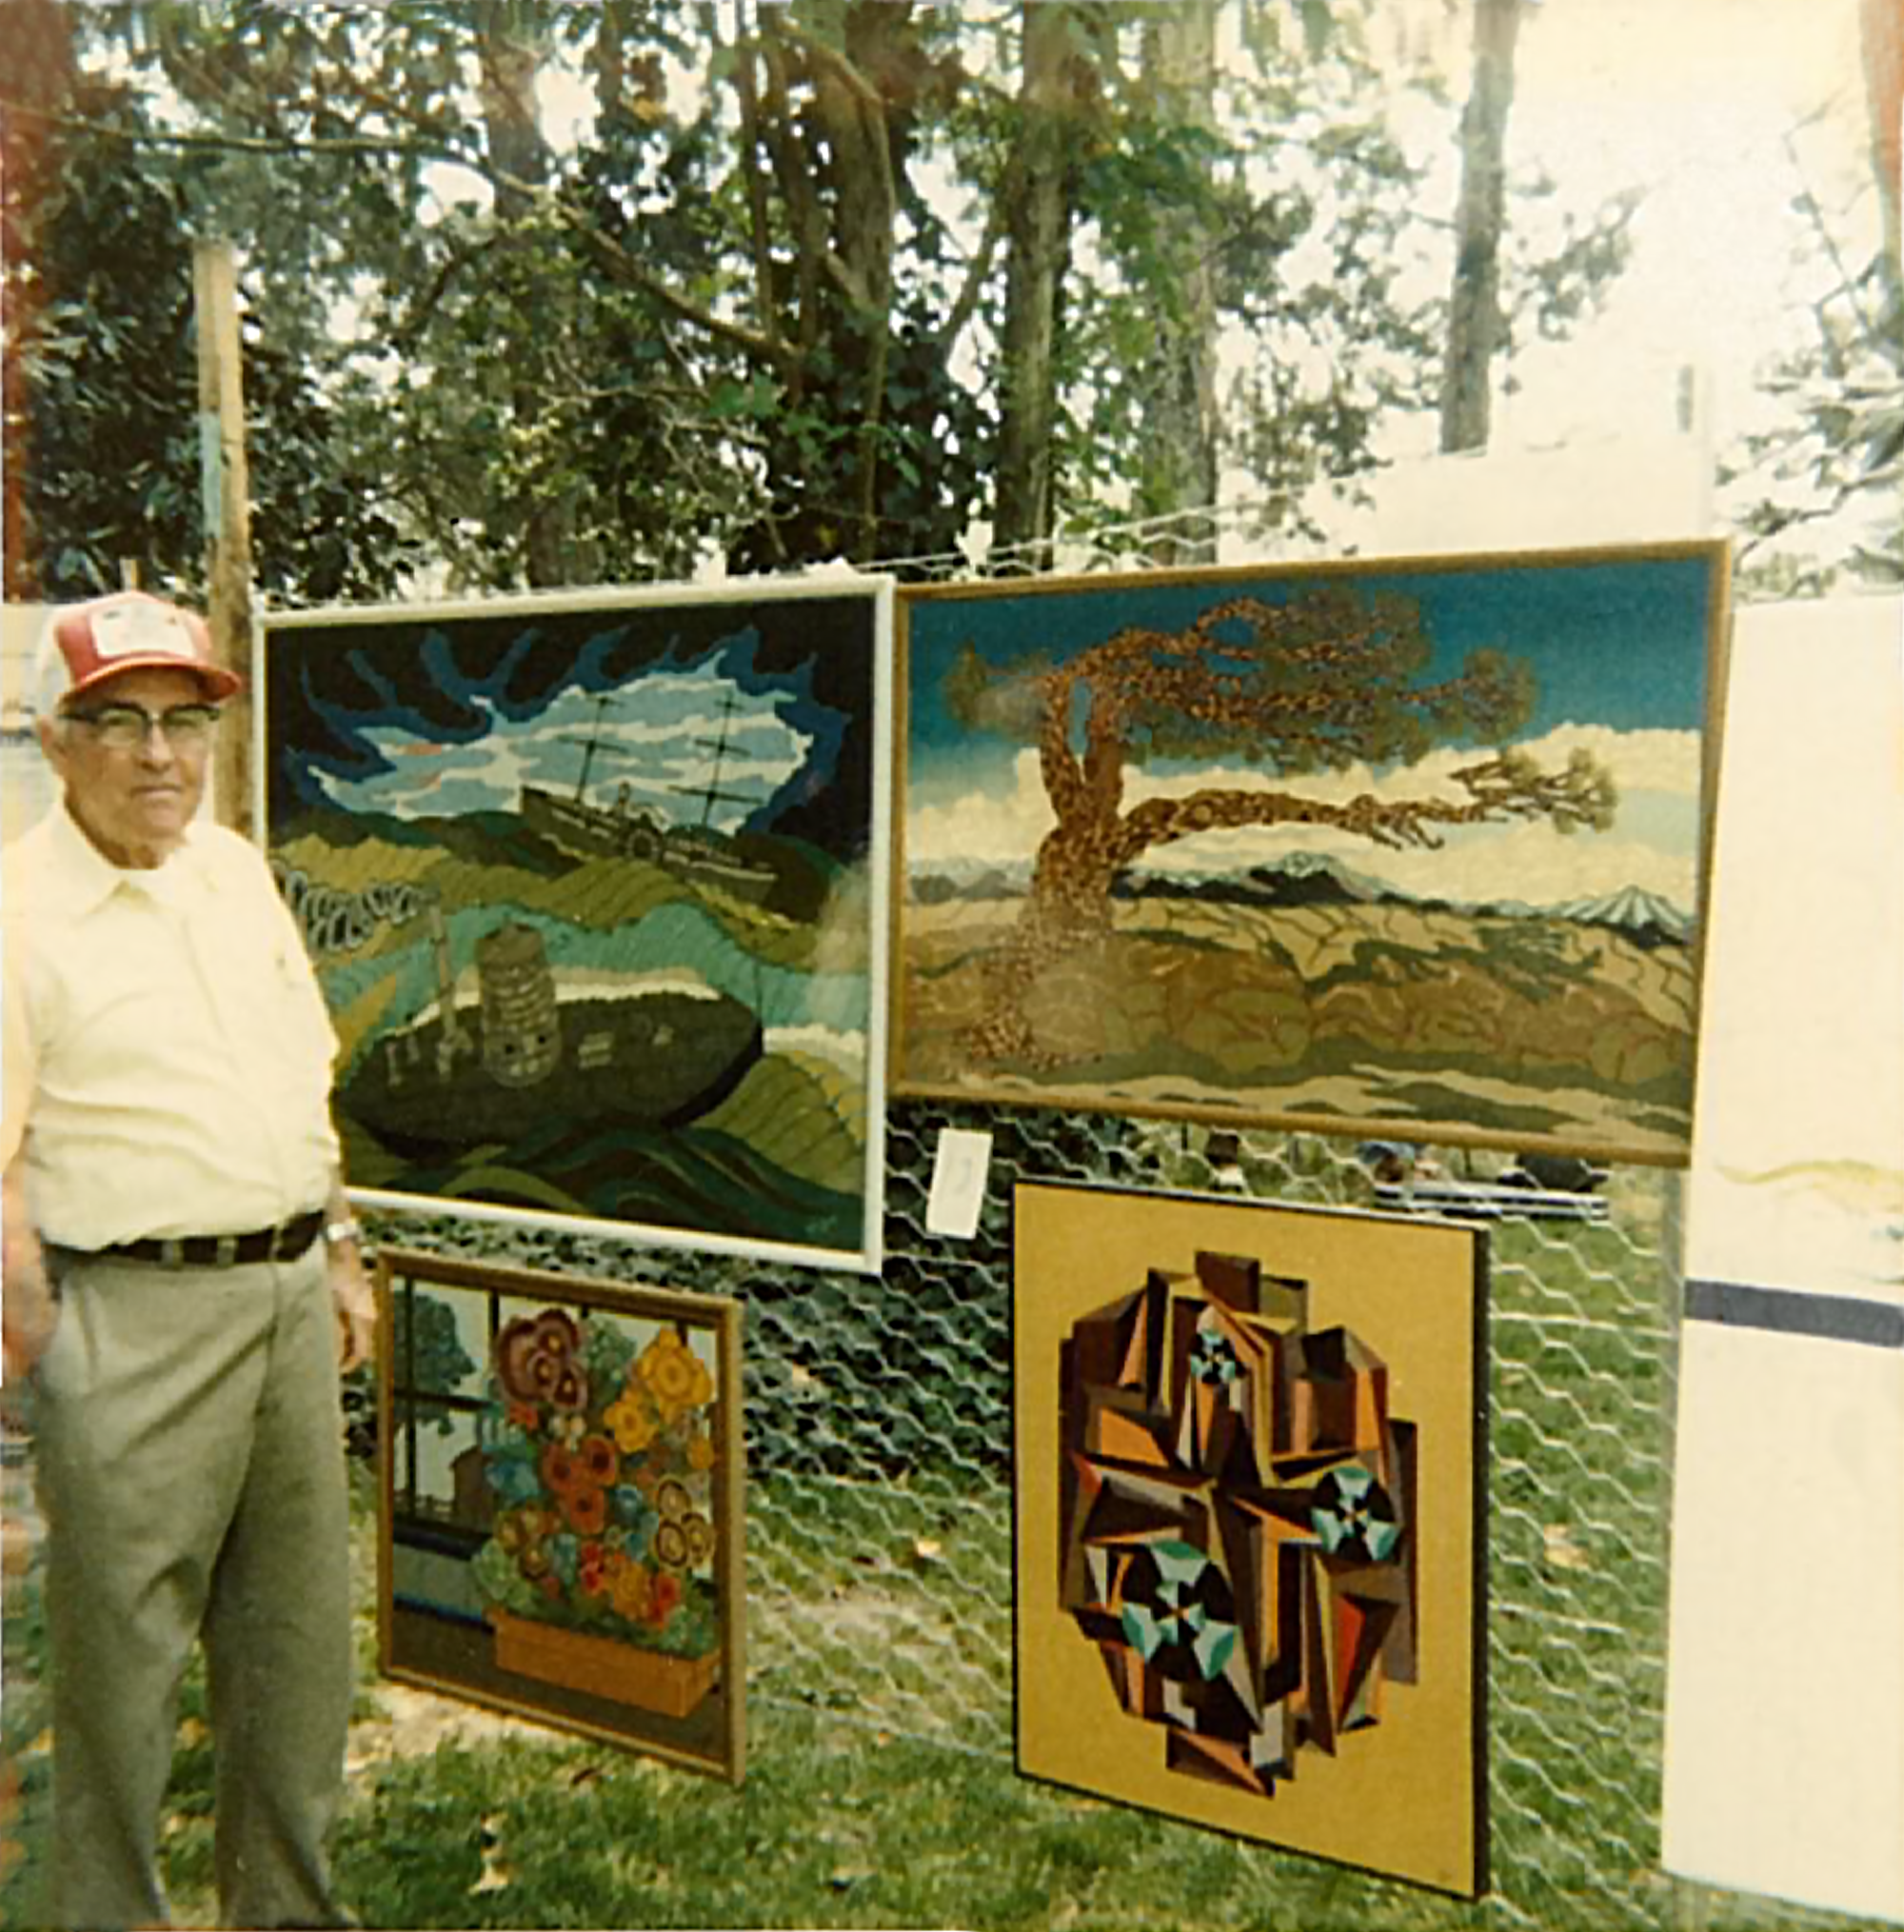 Robert T. Ewell with his paintings in Murfreesboro, North Carolina.